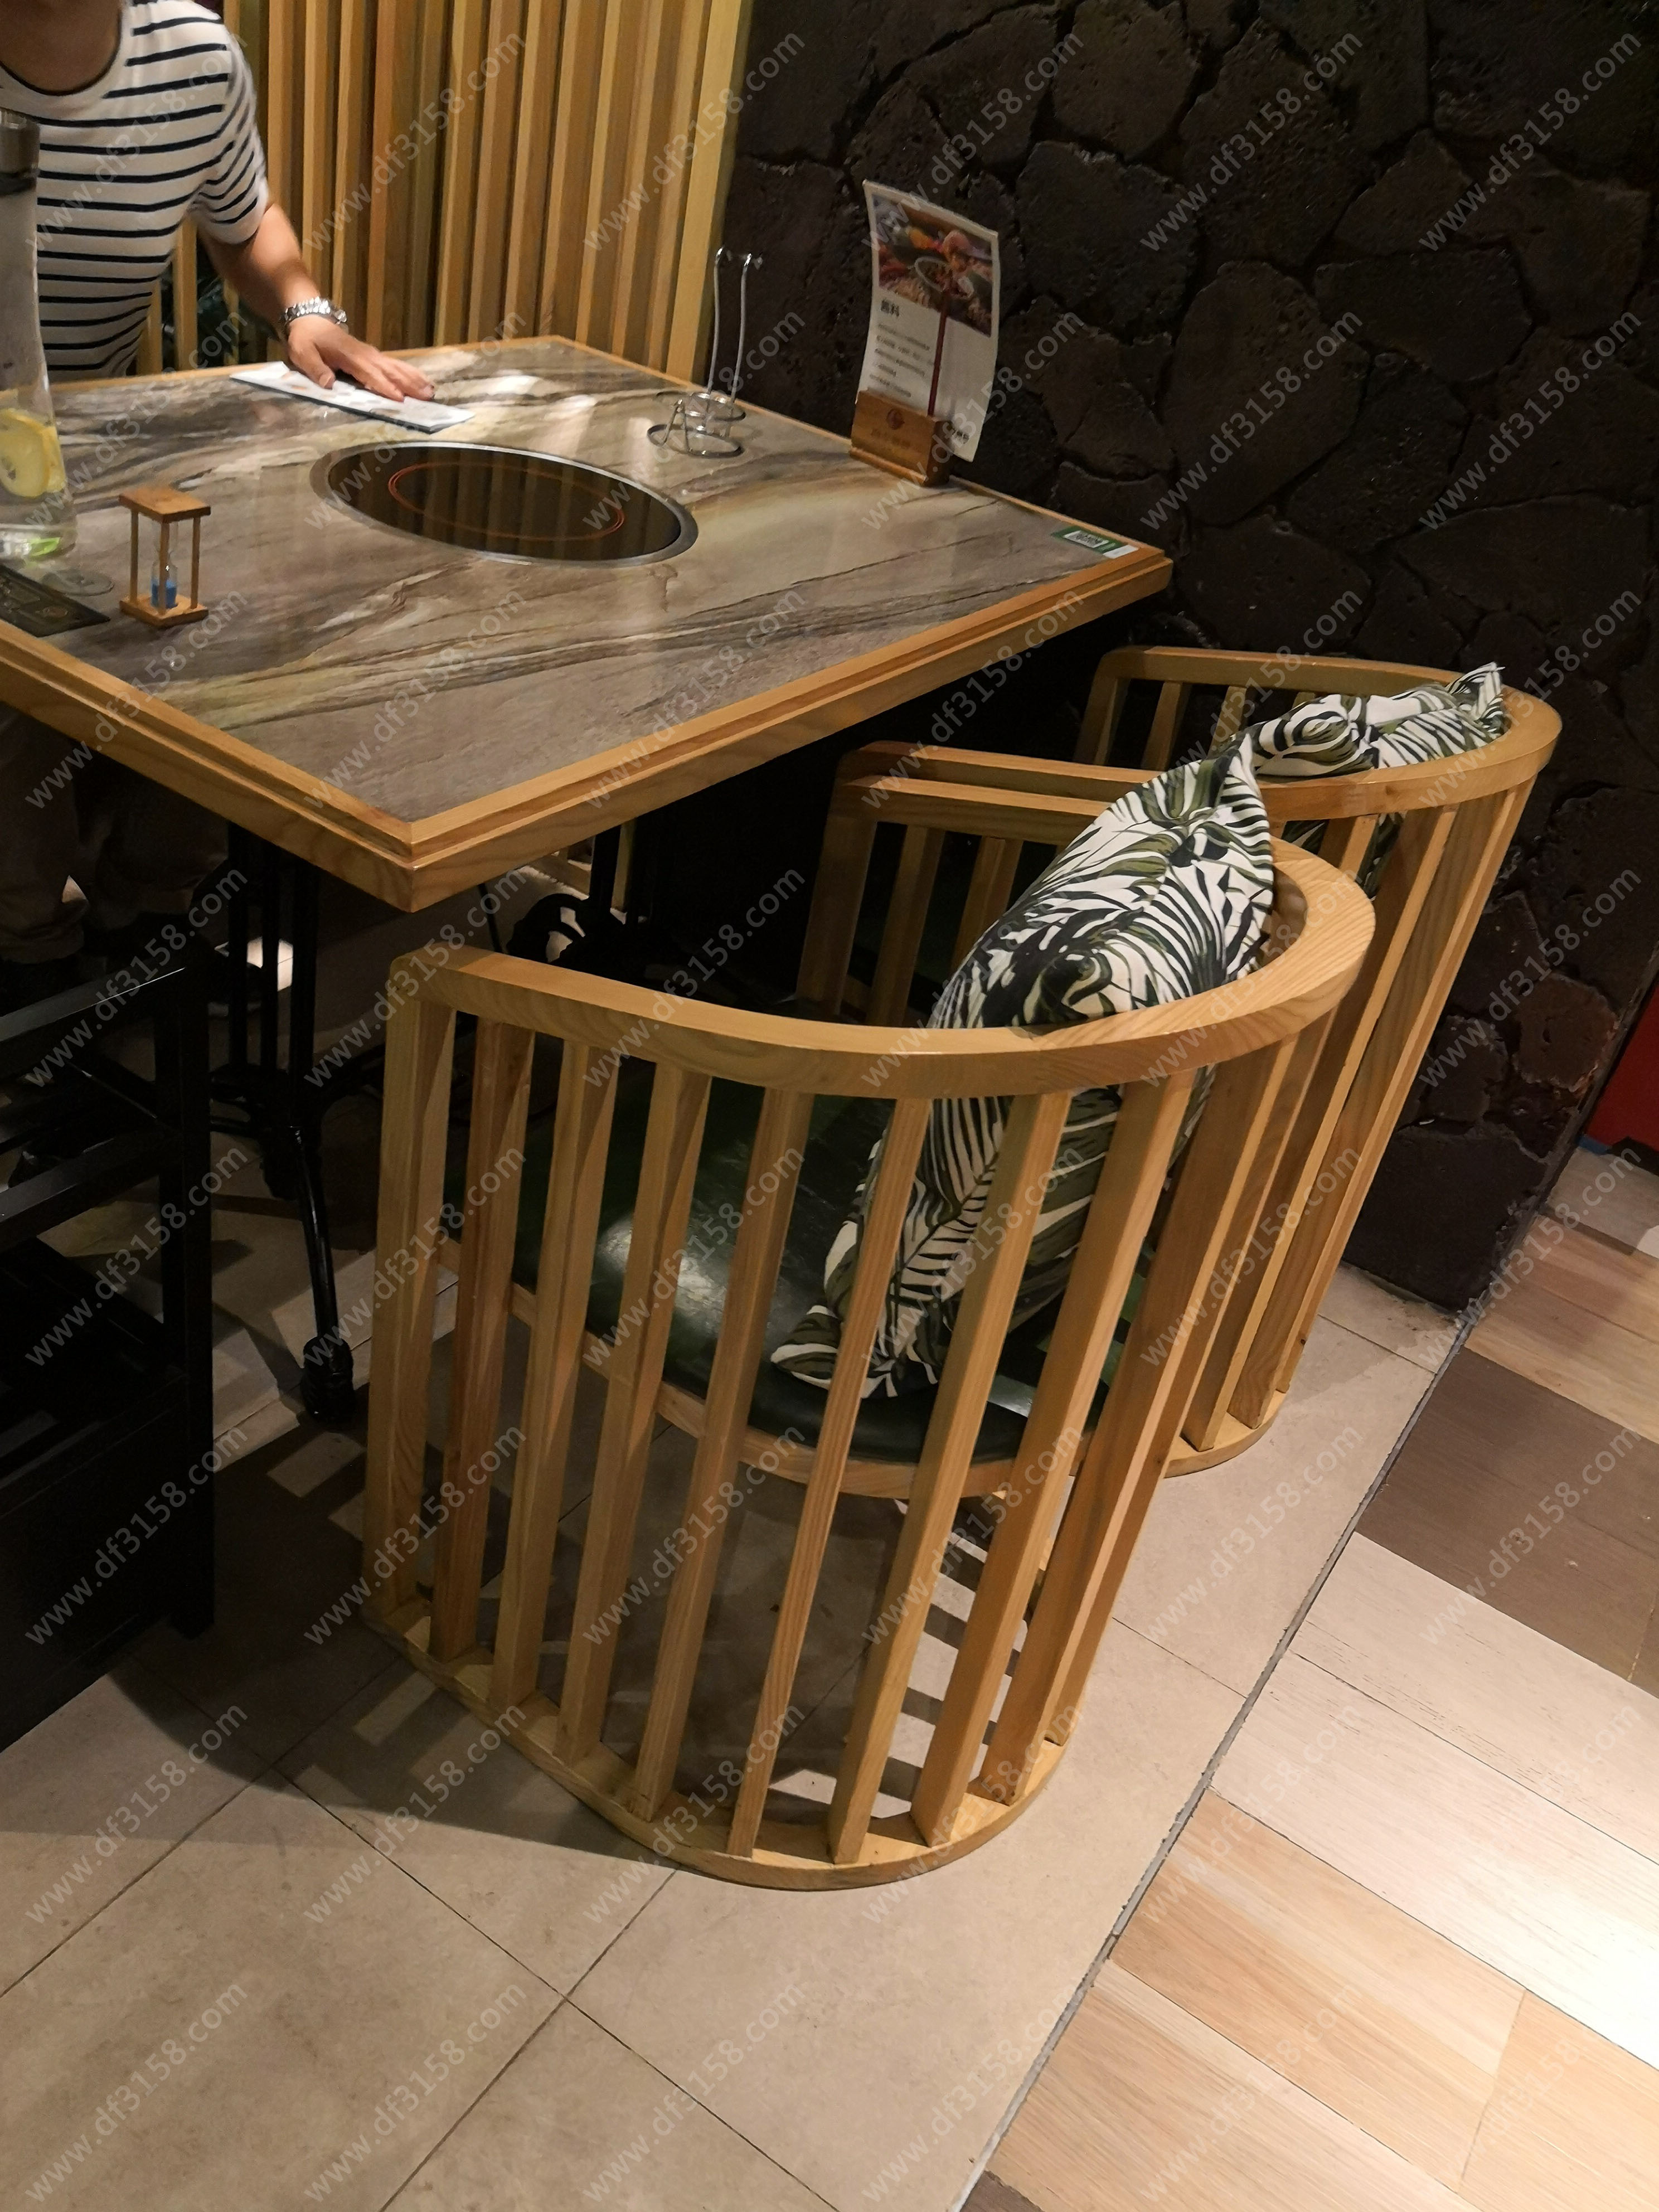   椰林四季椰子鸡餐厅 沙发卡座餐桌椅定制达芬家具订制电话400-6962-114